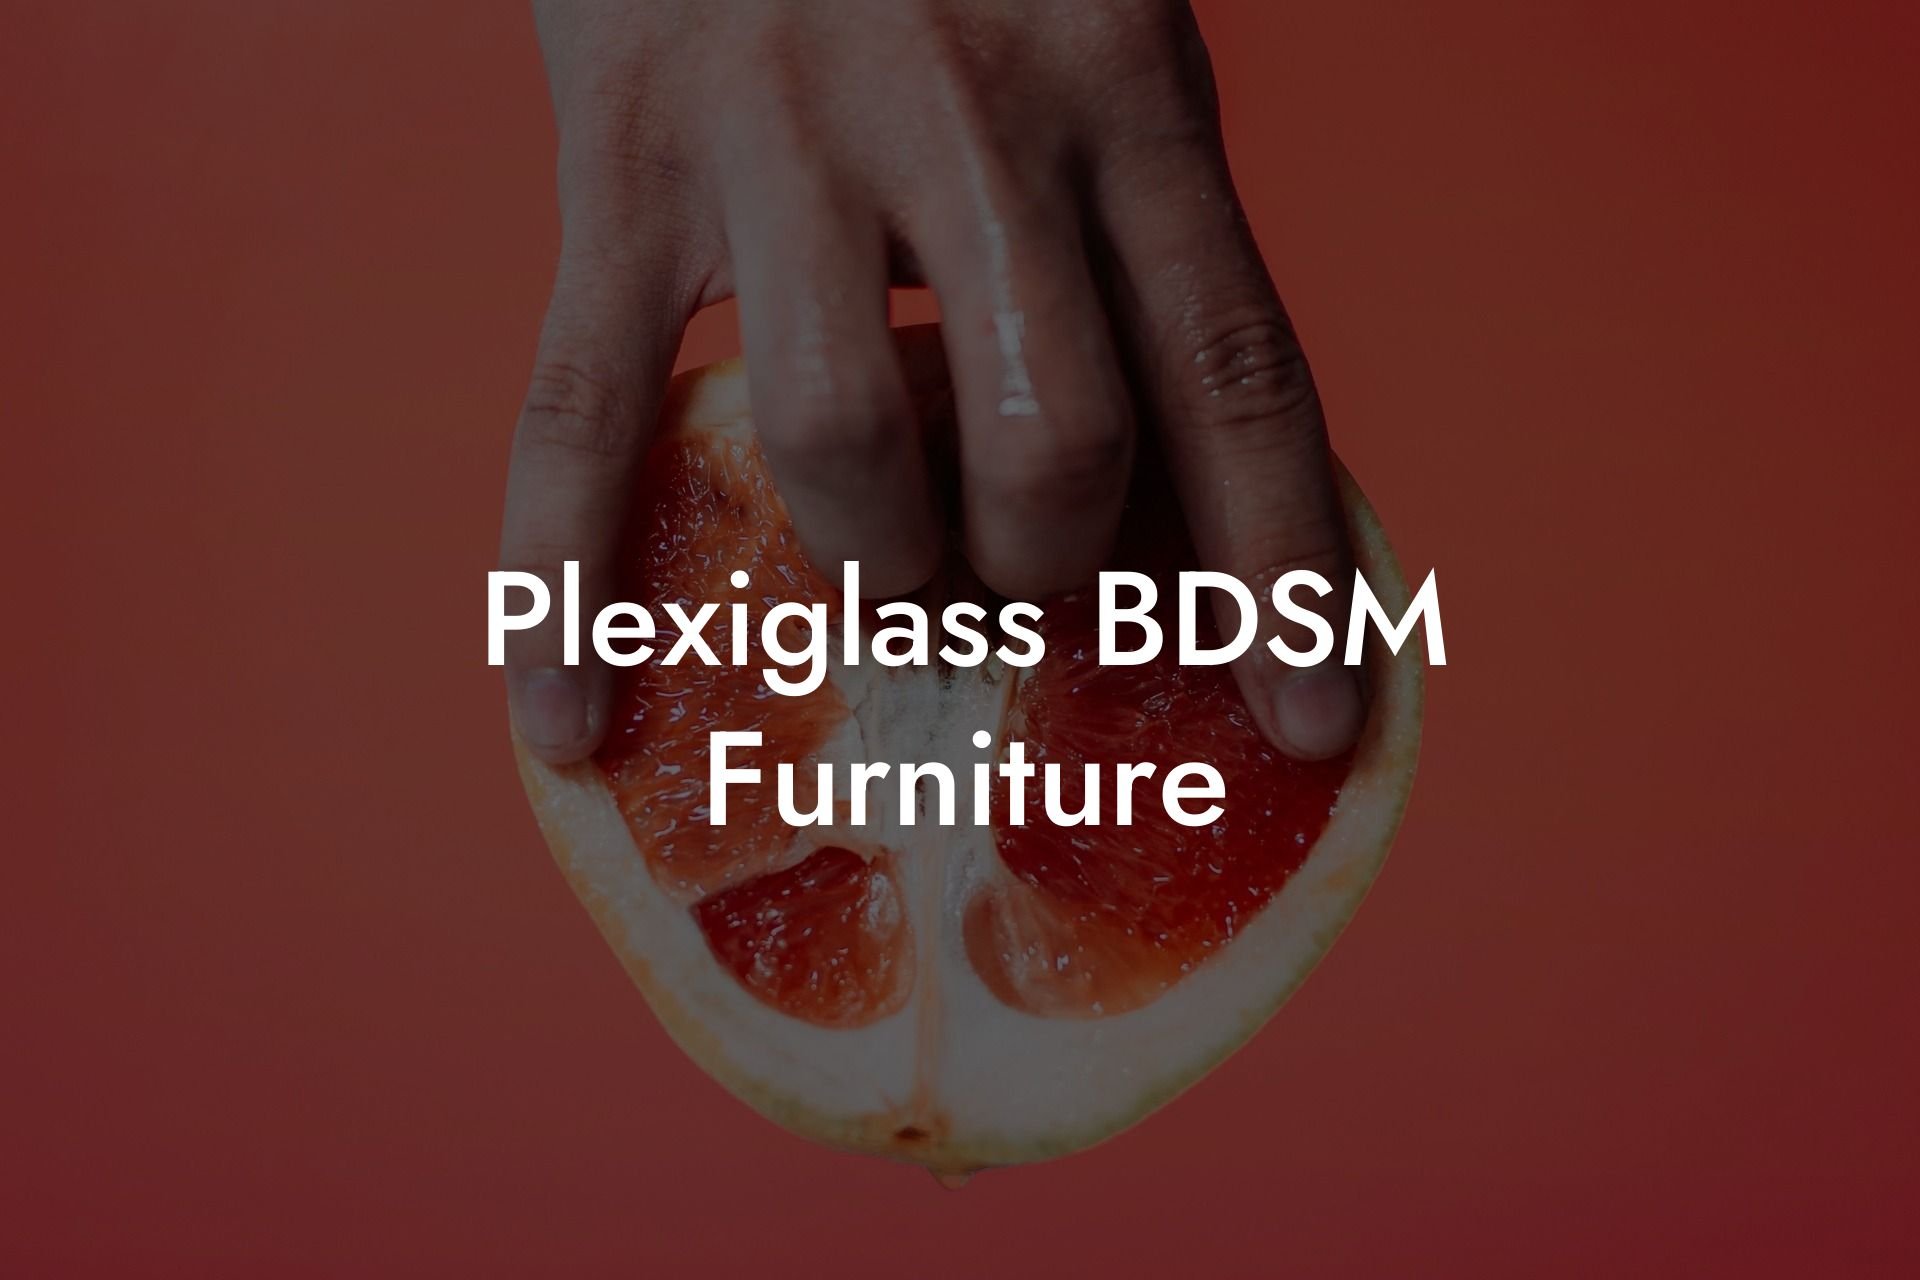 Plexiglass BDSM Furniture